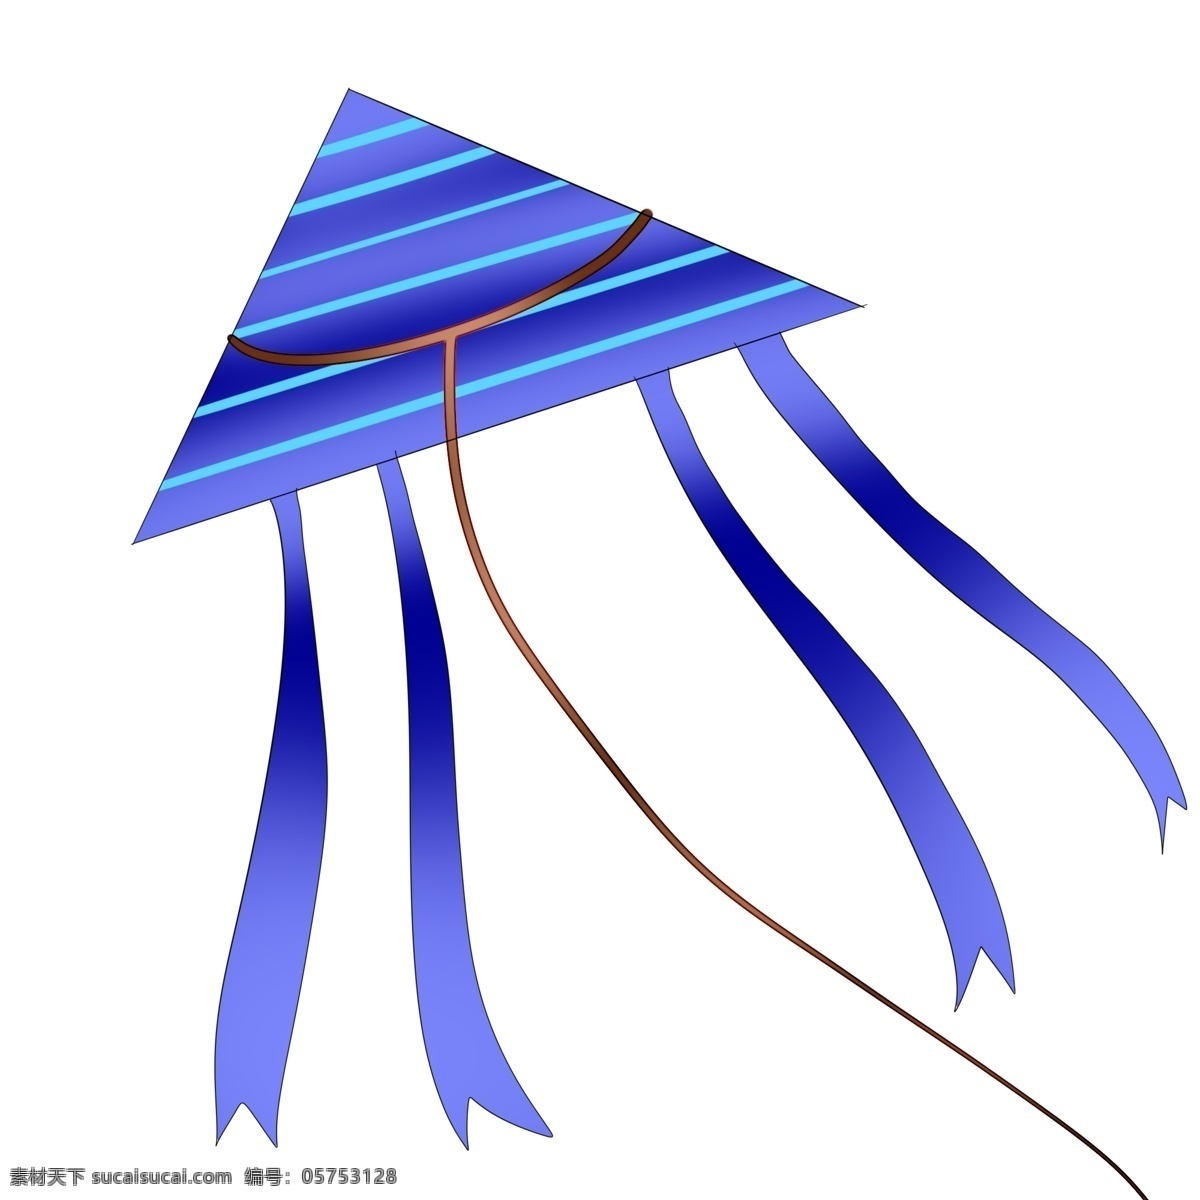 三角形 蓝色 条纹 风筝 飞翔蓝色风筝 春游春季踏青 蓝色条形风筝 放风筝 三角形风筝 插画